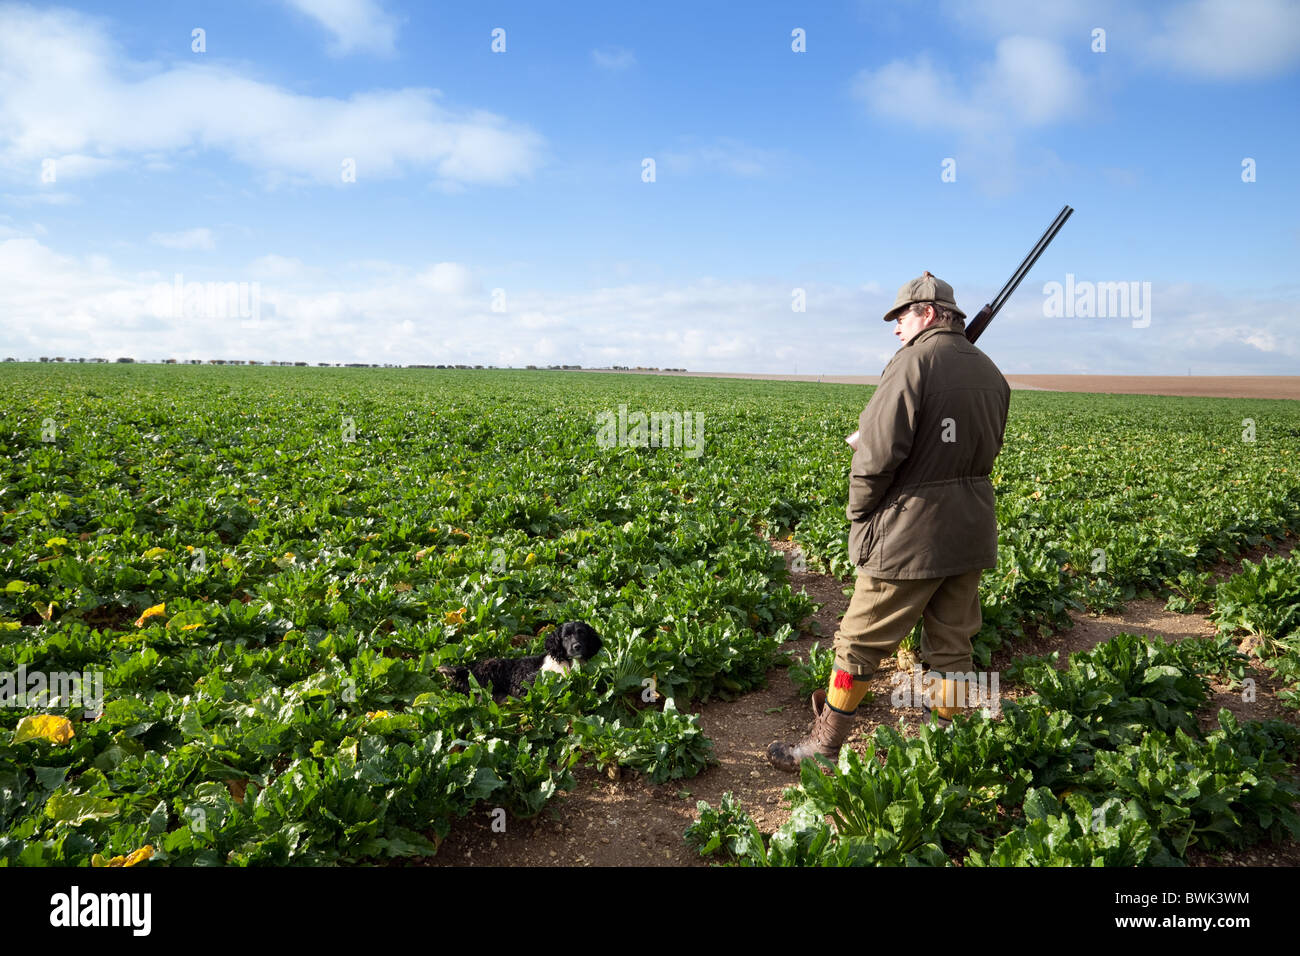 Un sparatutto (pistola) e il suo gundog in attesa della selvaggina di penna in aumento in un campo di barbabietole da zucchero, su un germoglio, Cambridgeshire, Regno Unito Foto Stock